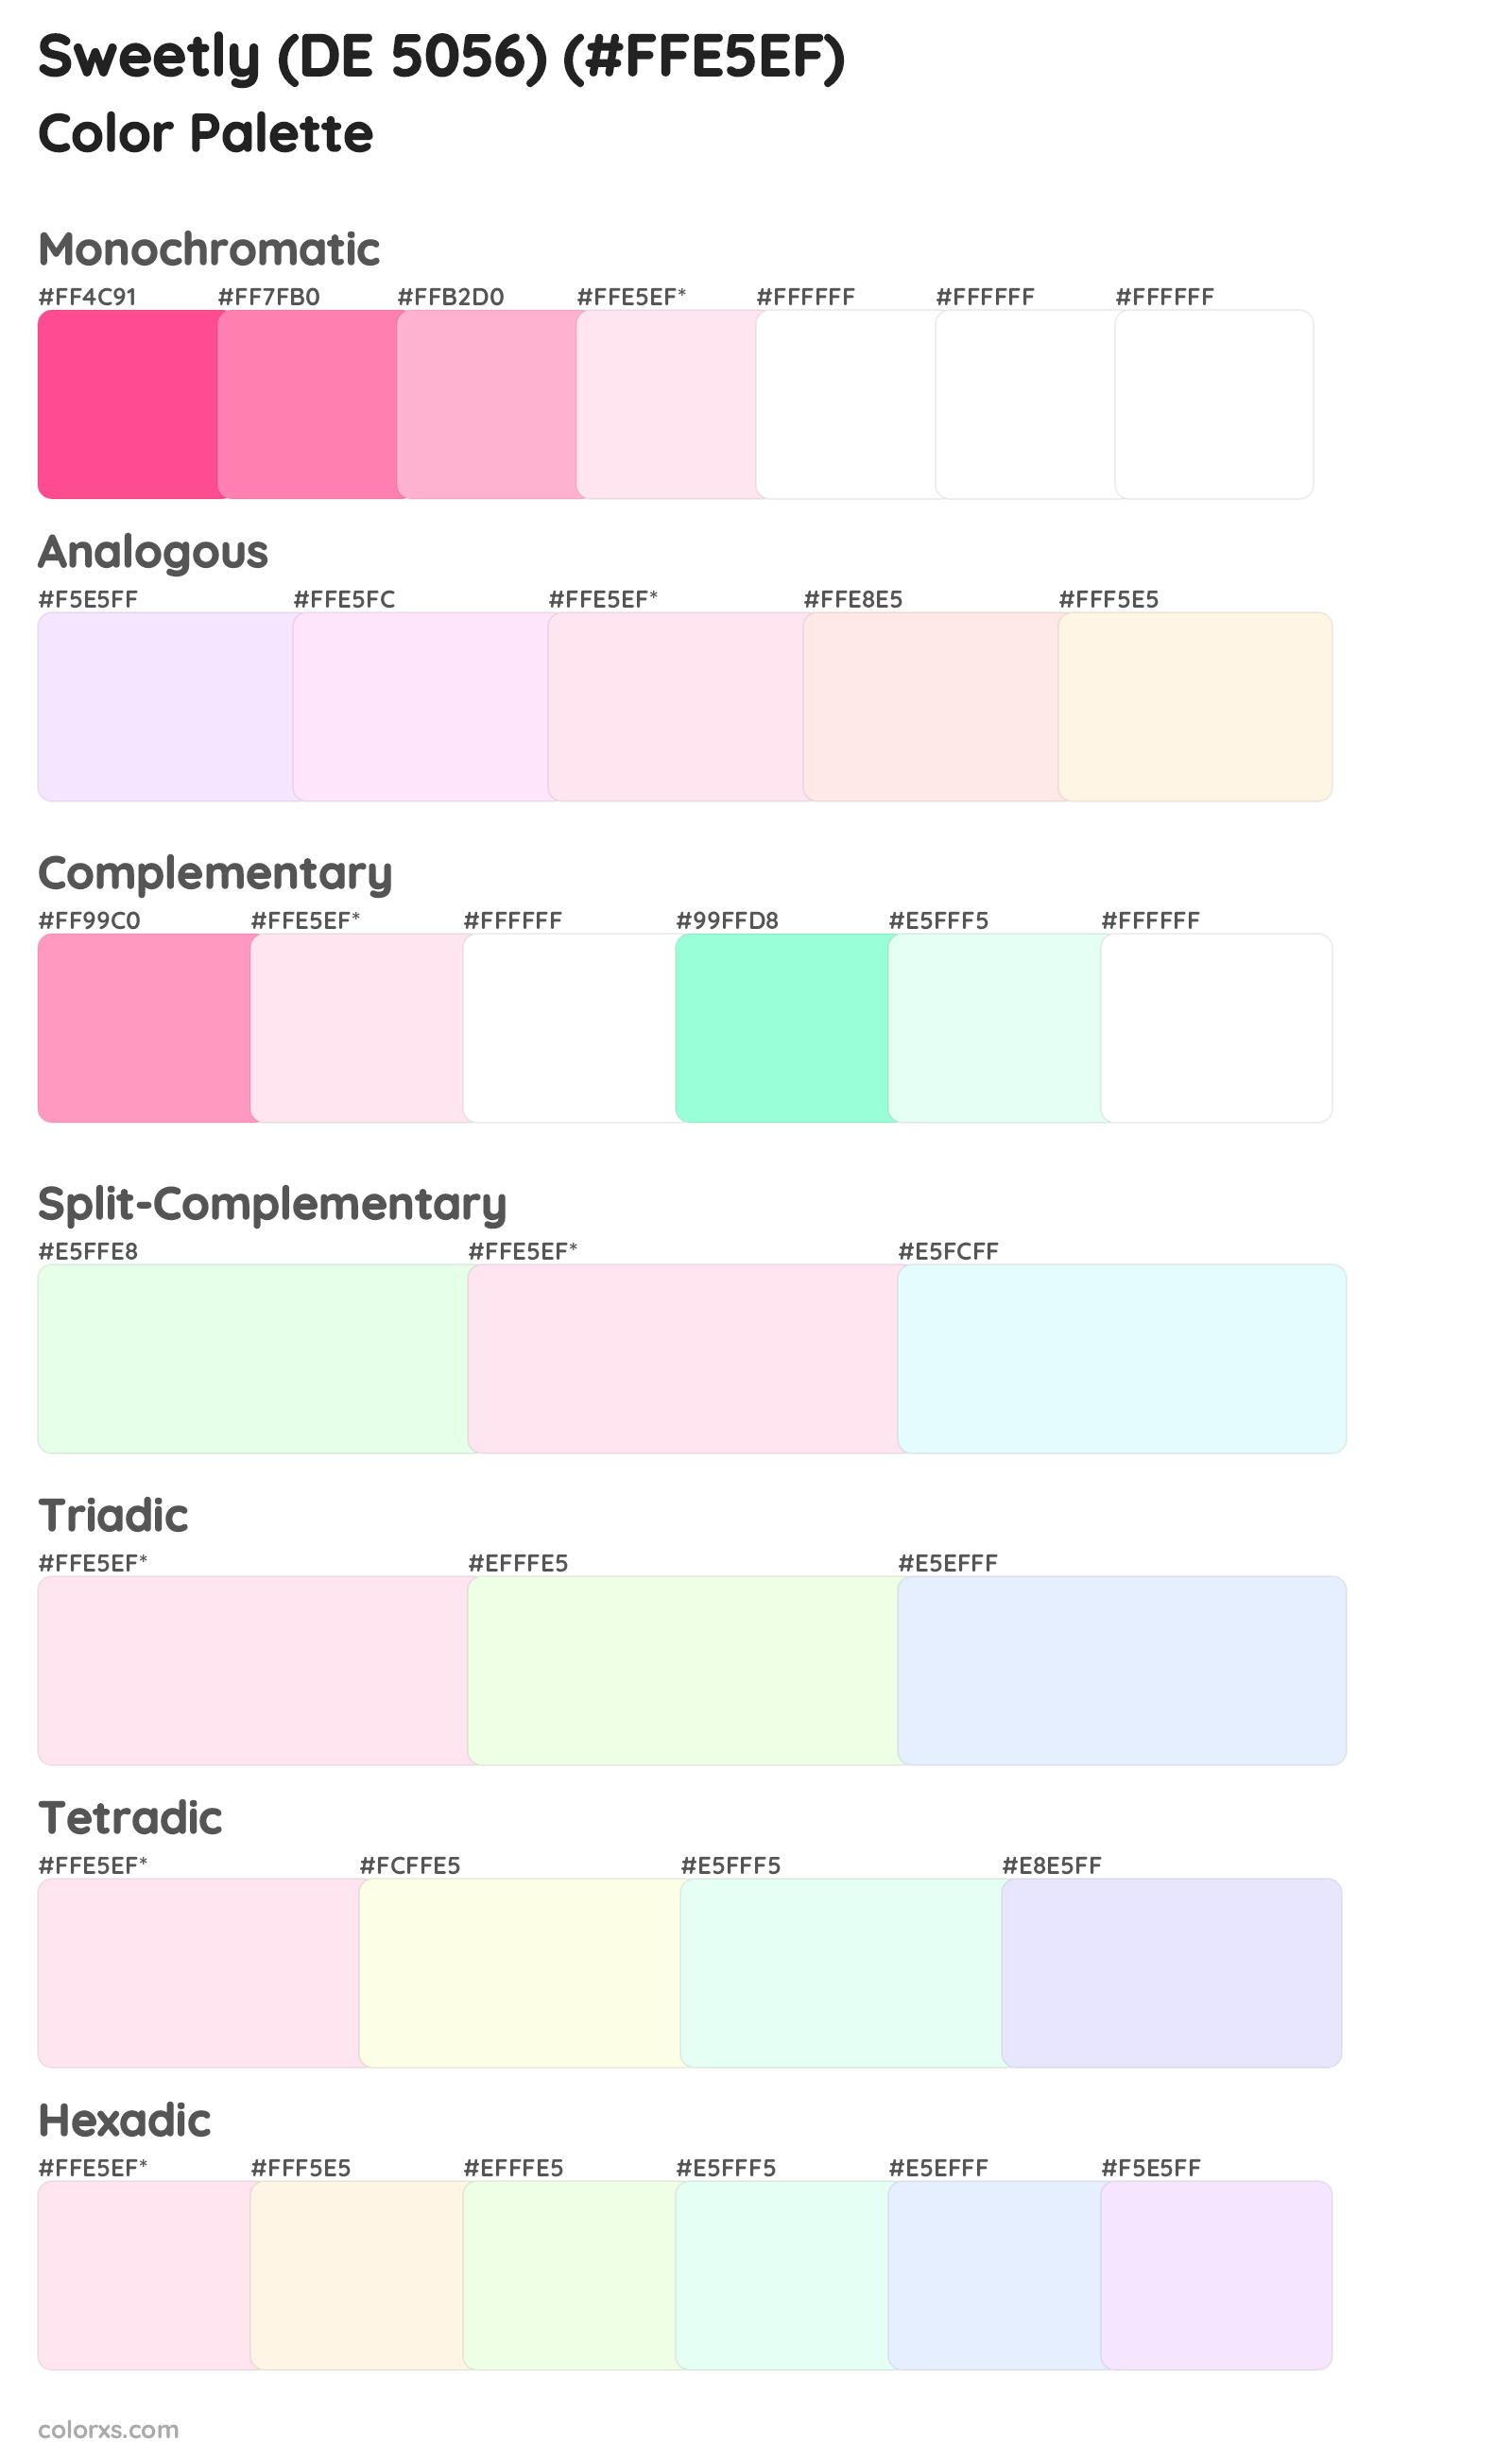 Sweetly (DE 5056) Color Scheme Palettes